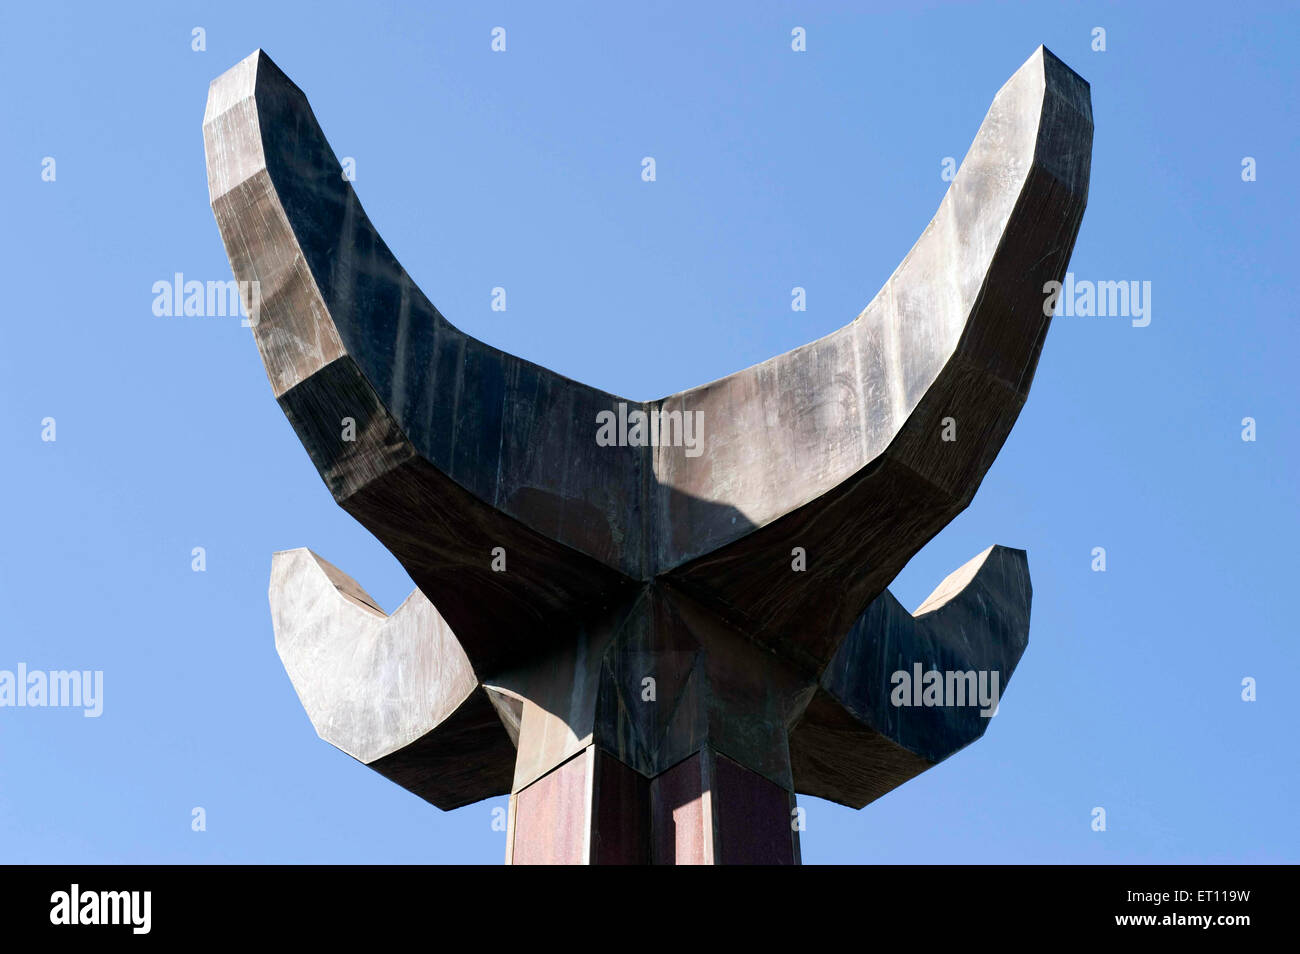 Sculpture portugaise de symbole de règle coloniale à Azad Maidan Panjim Goa Inde Asie Banque D'Images